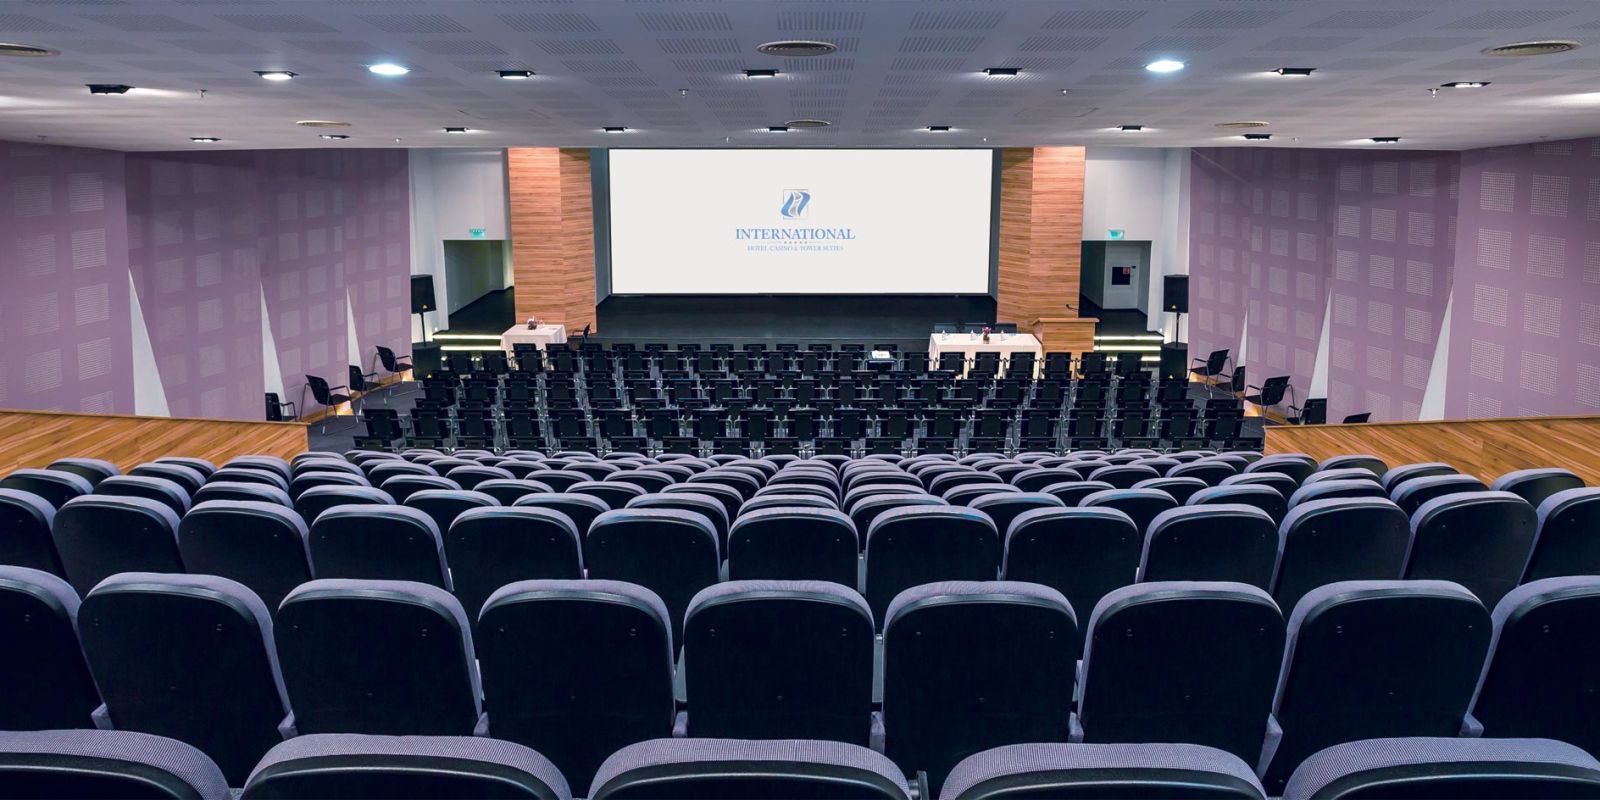 A Large Empty Auditorium